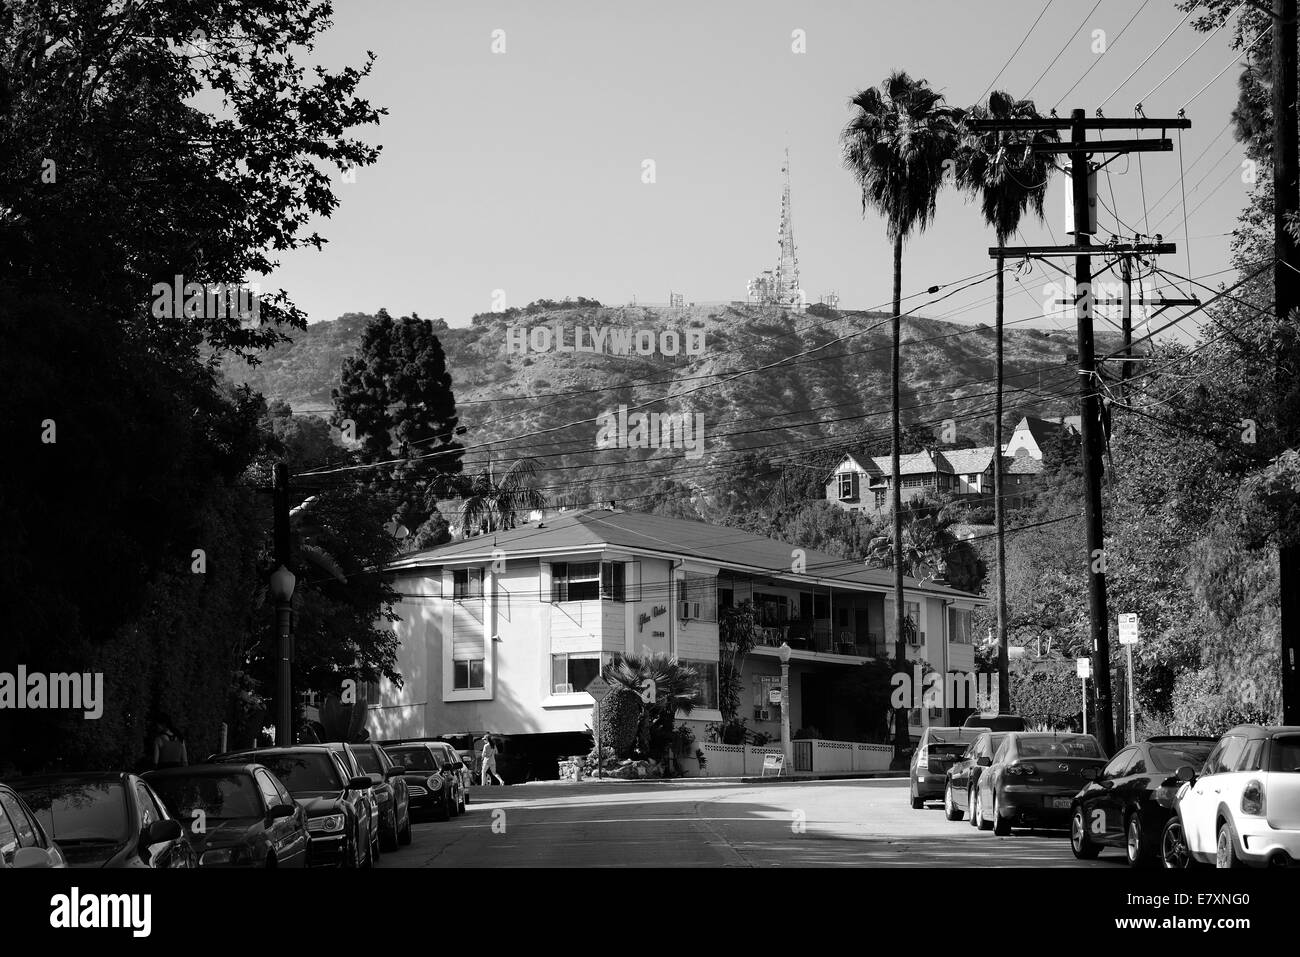 Los Angeles, CA - 18 Maggio: Hollywood Sign sulla montagna il 18 maggio 2014 a Los Angeles. Nasce come una promozione immobiliare, è ora il famoso punto di riferimento la e noi. Foto Stock